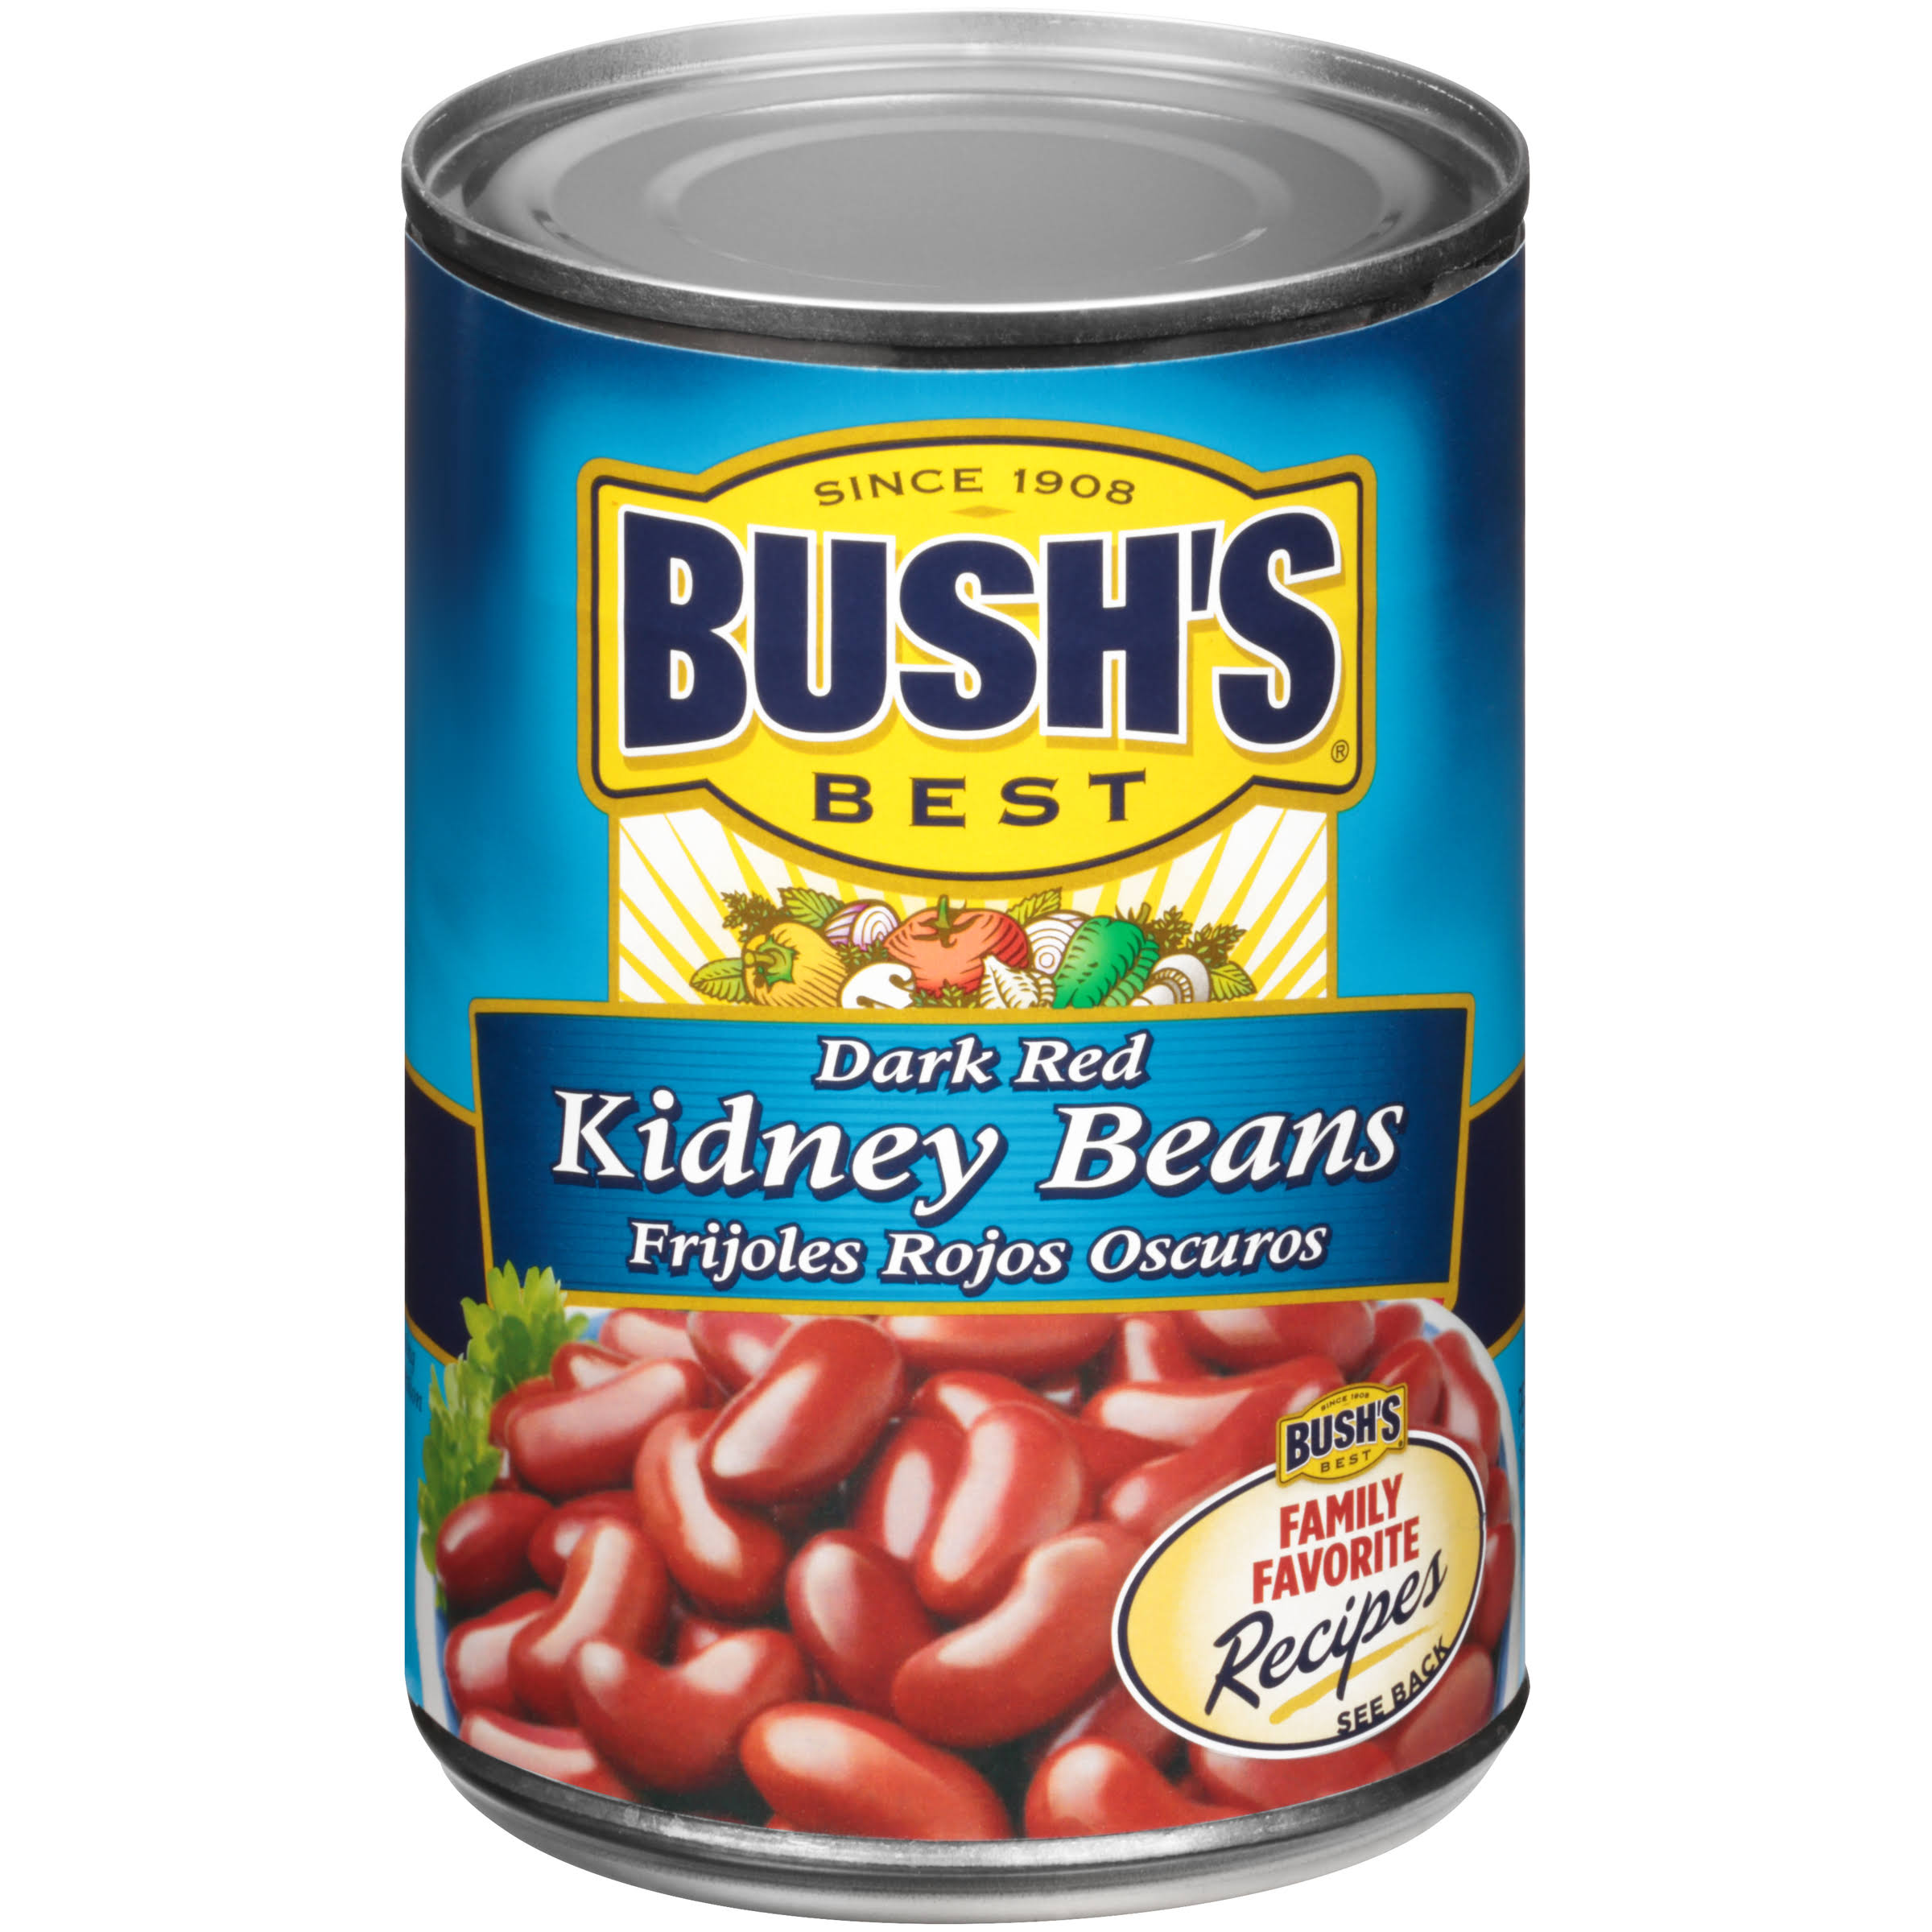 Bush's Best Dark Red Kidney Beans - 15oz